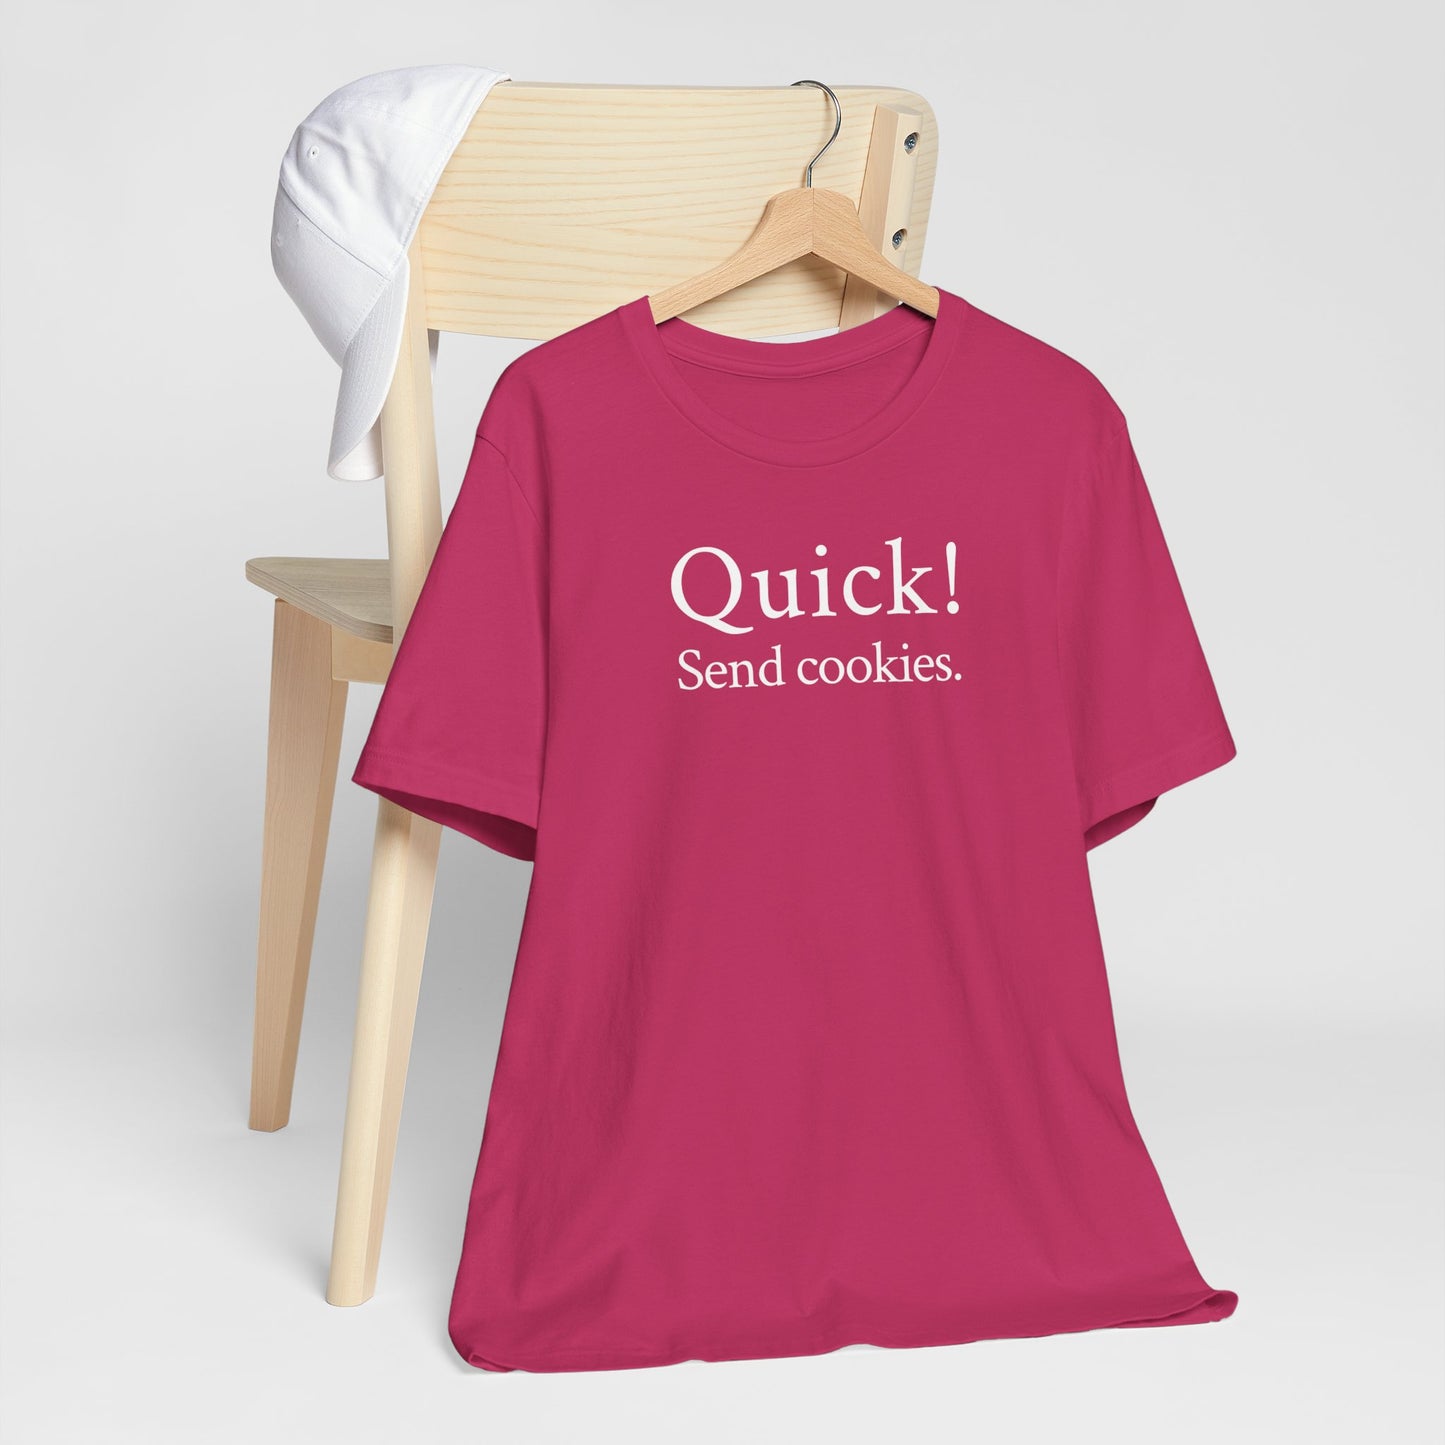 Quick! Send cookies.